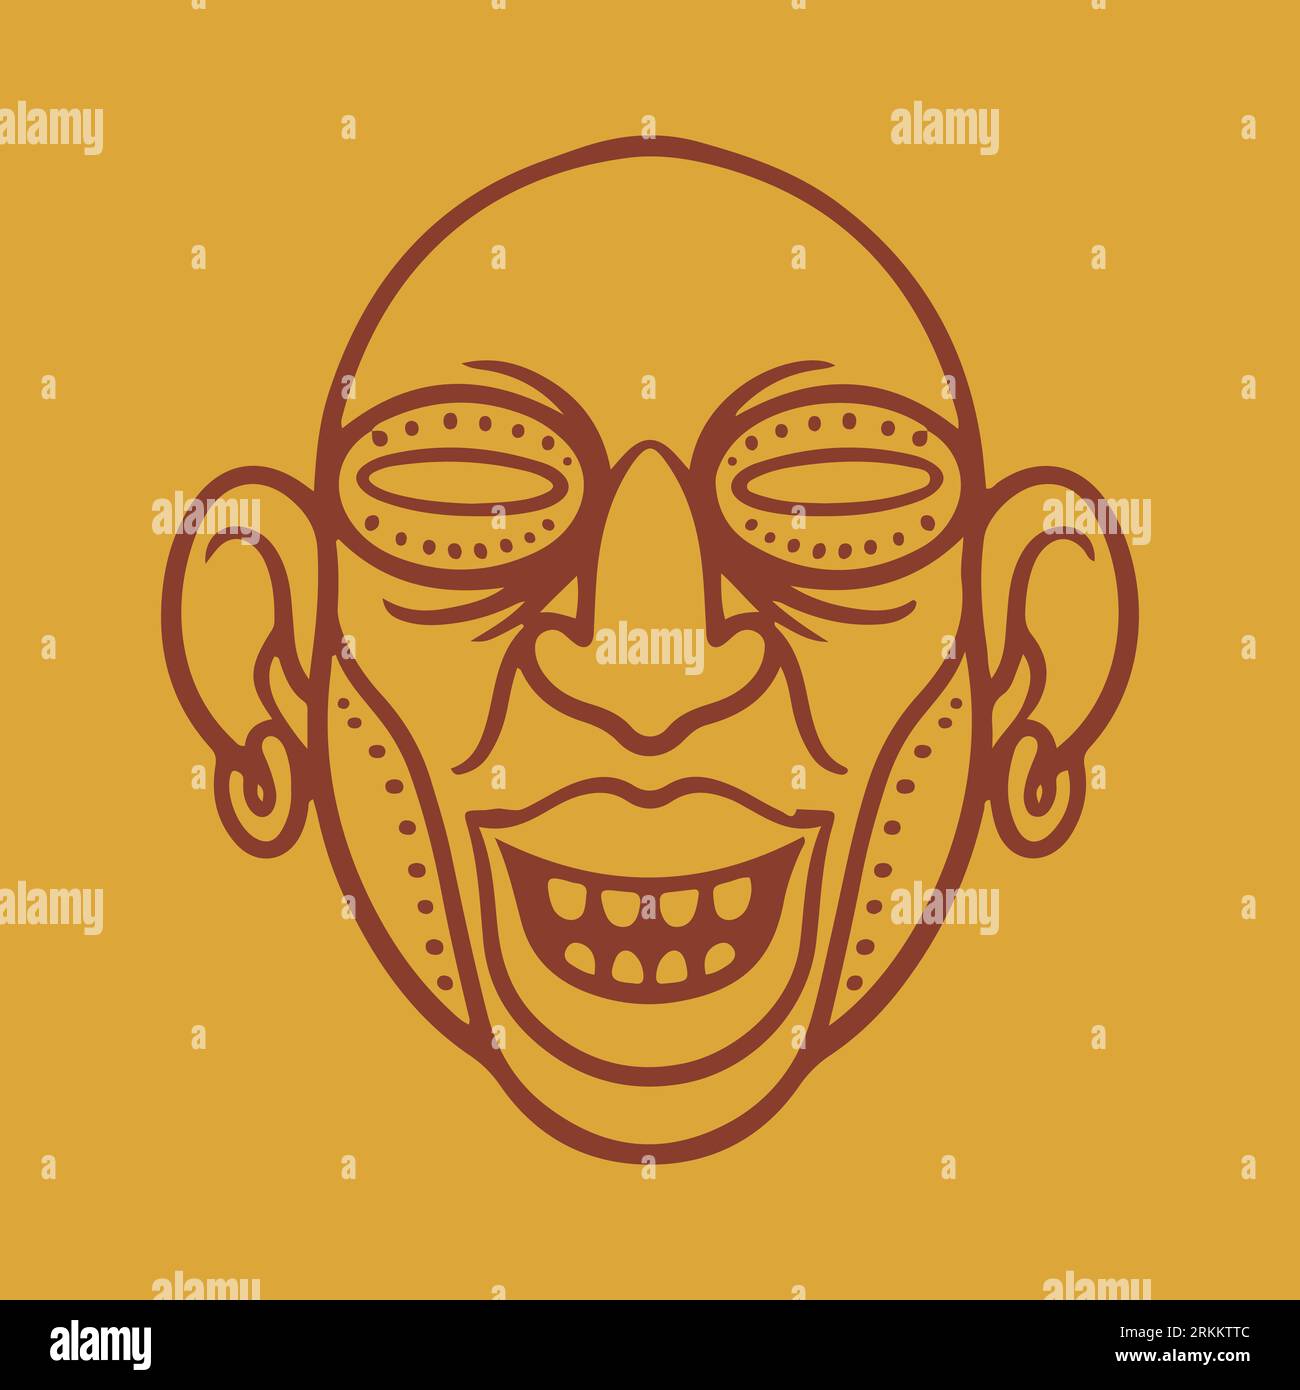 Masque facial antique tribal maya illustration vectorielle plate sur fond jaune. Masque aztèque de dessin animé sur la tête, masque facial ancien Illustration de Vecteur